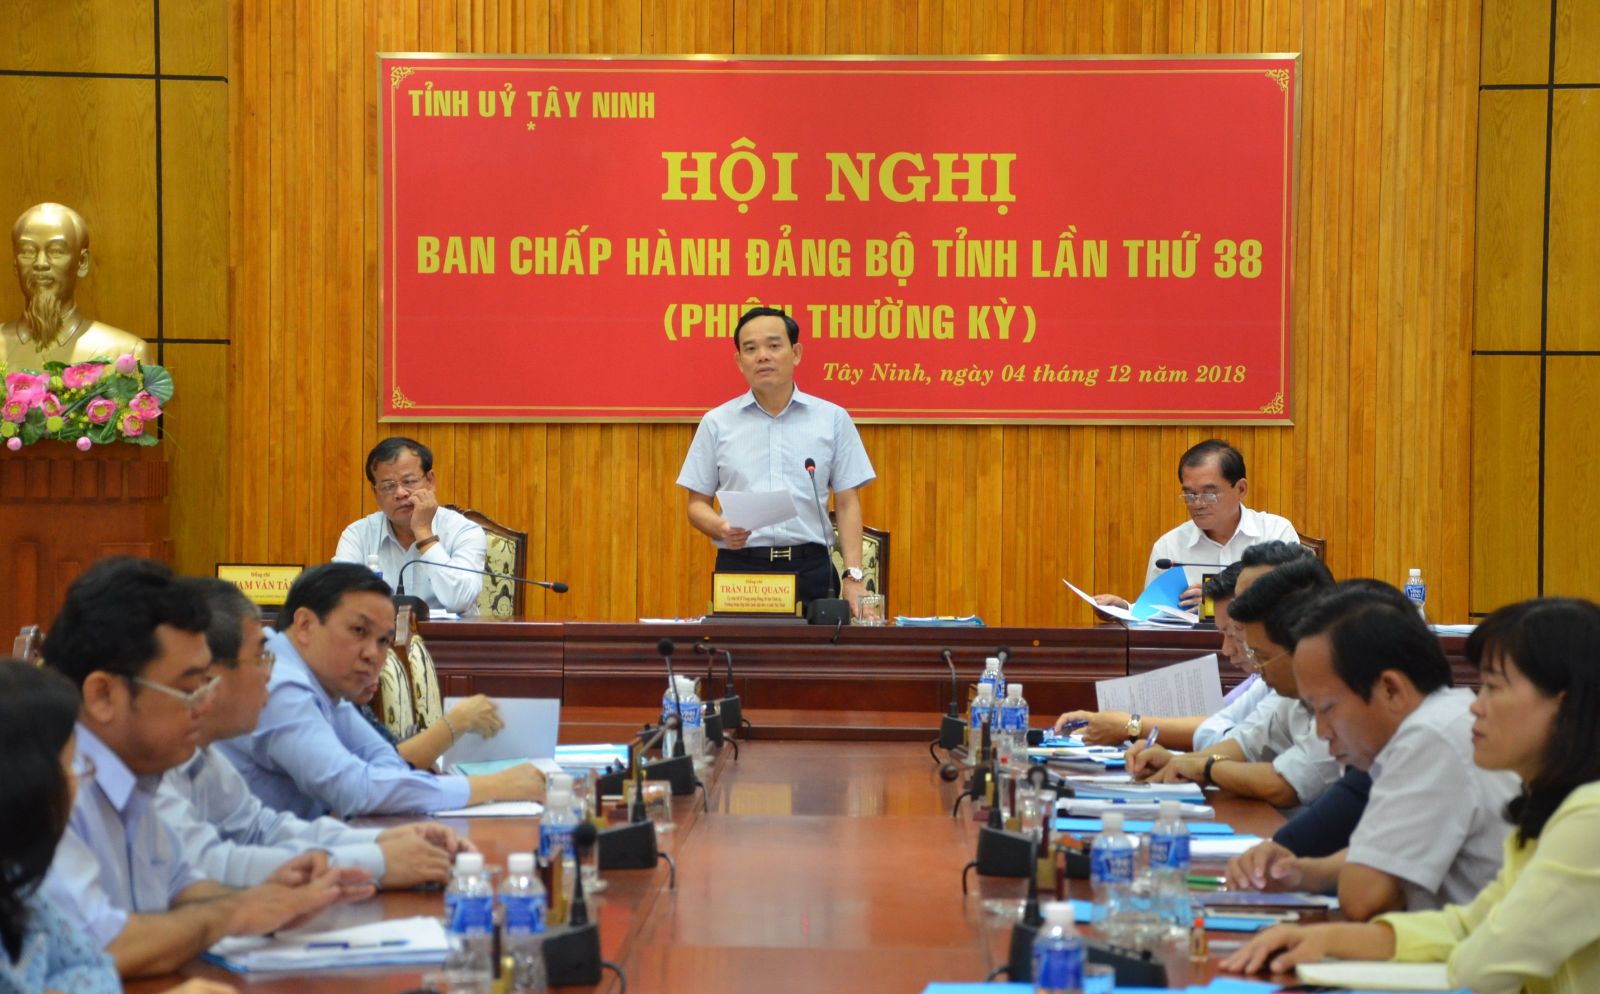 Điểm báo in Tây Ninh ngày 05.12.2018